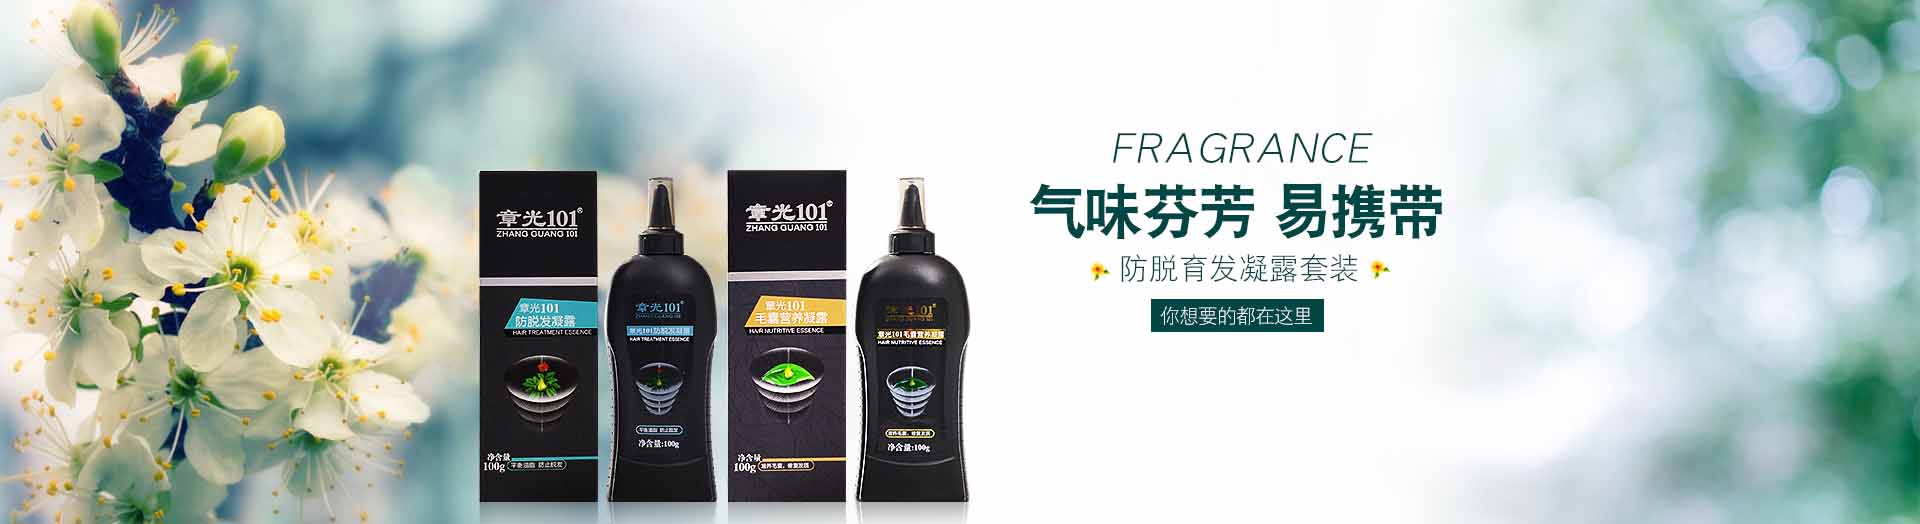 章光101_化妆护肤品成分介绍_zhangguang101是哪个国家的品牌_是什么牌子